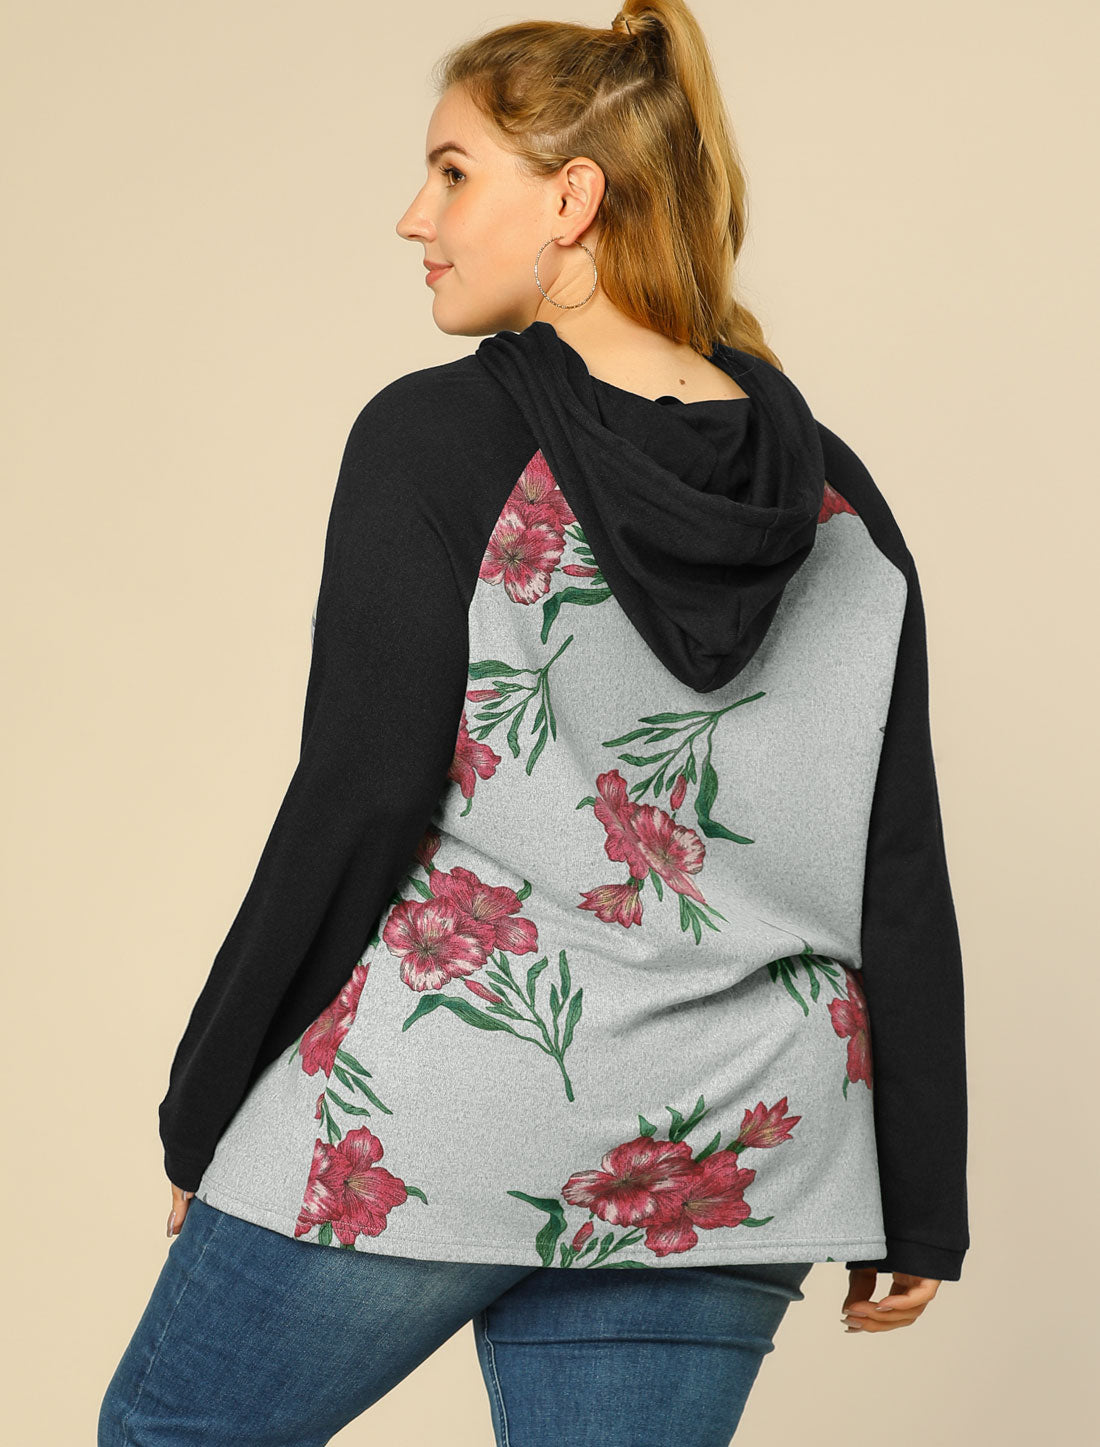 Bublédon Women's Plus Size Hoodies Raglan Sleeve Floral Hoodie